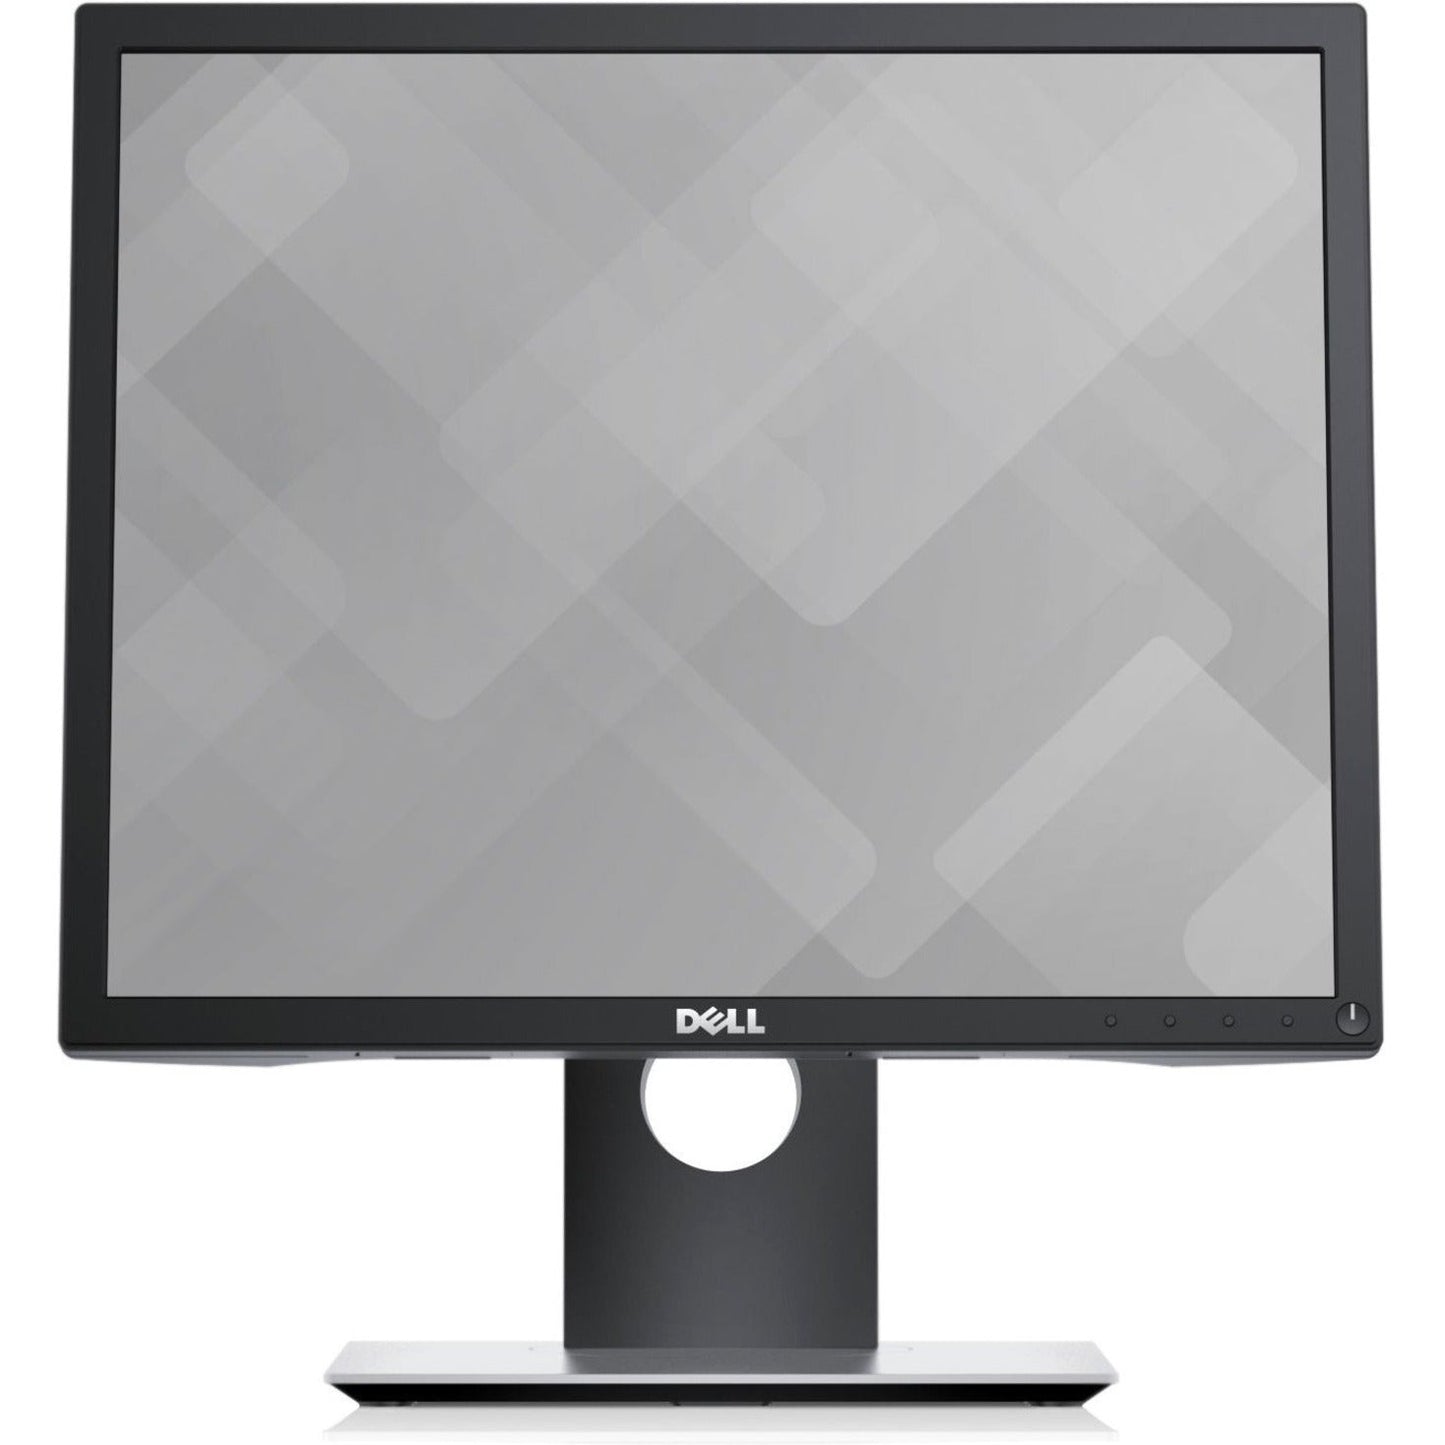 Dell P1917S 19" SXGA LCD Monitor - 5:4 - Black